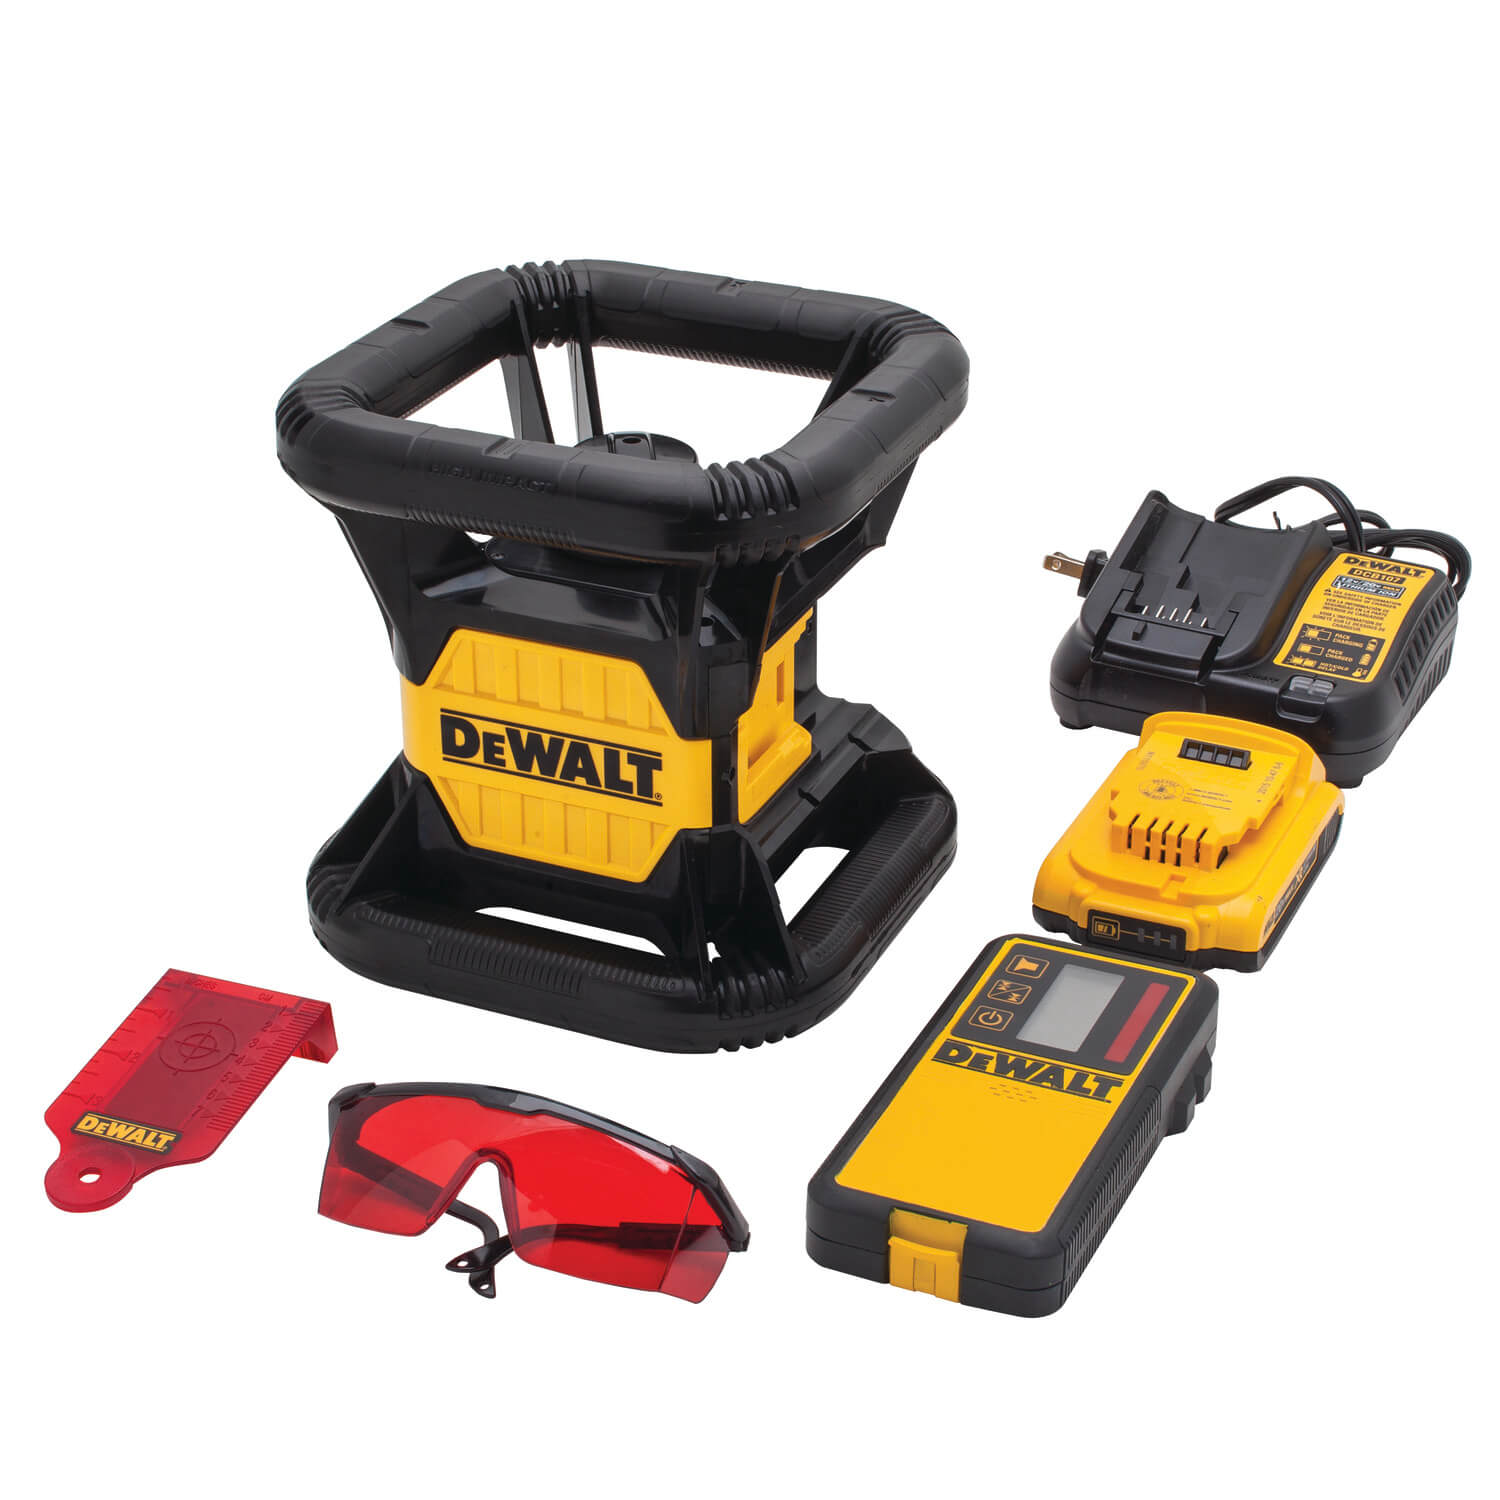 DEWALT DW074LR 20v MAX Rotary Laser, Red - wise-line-tools